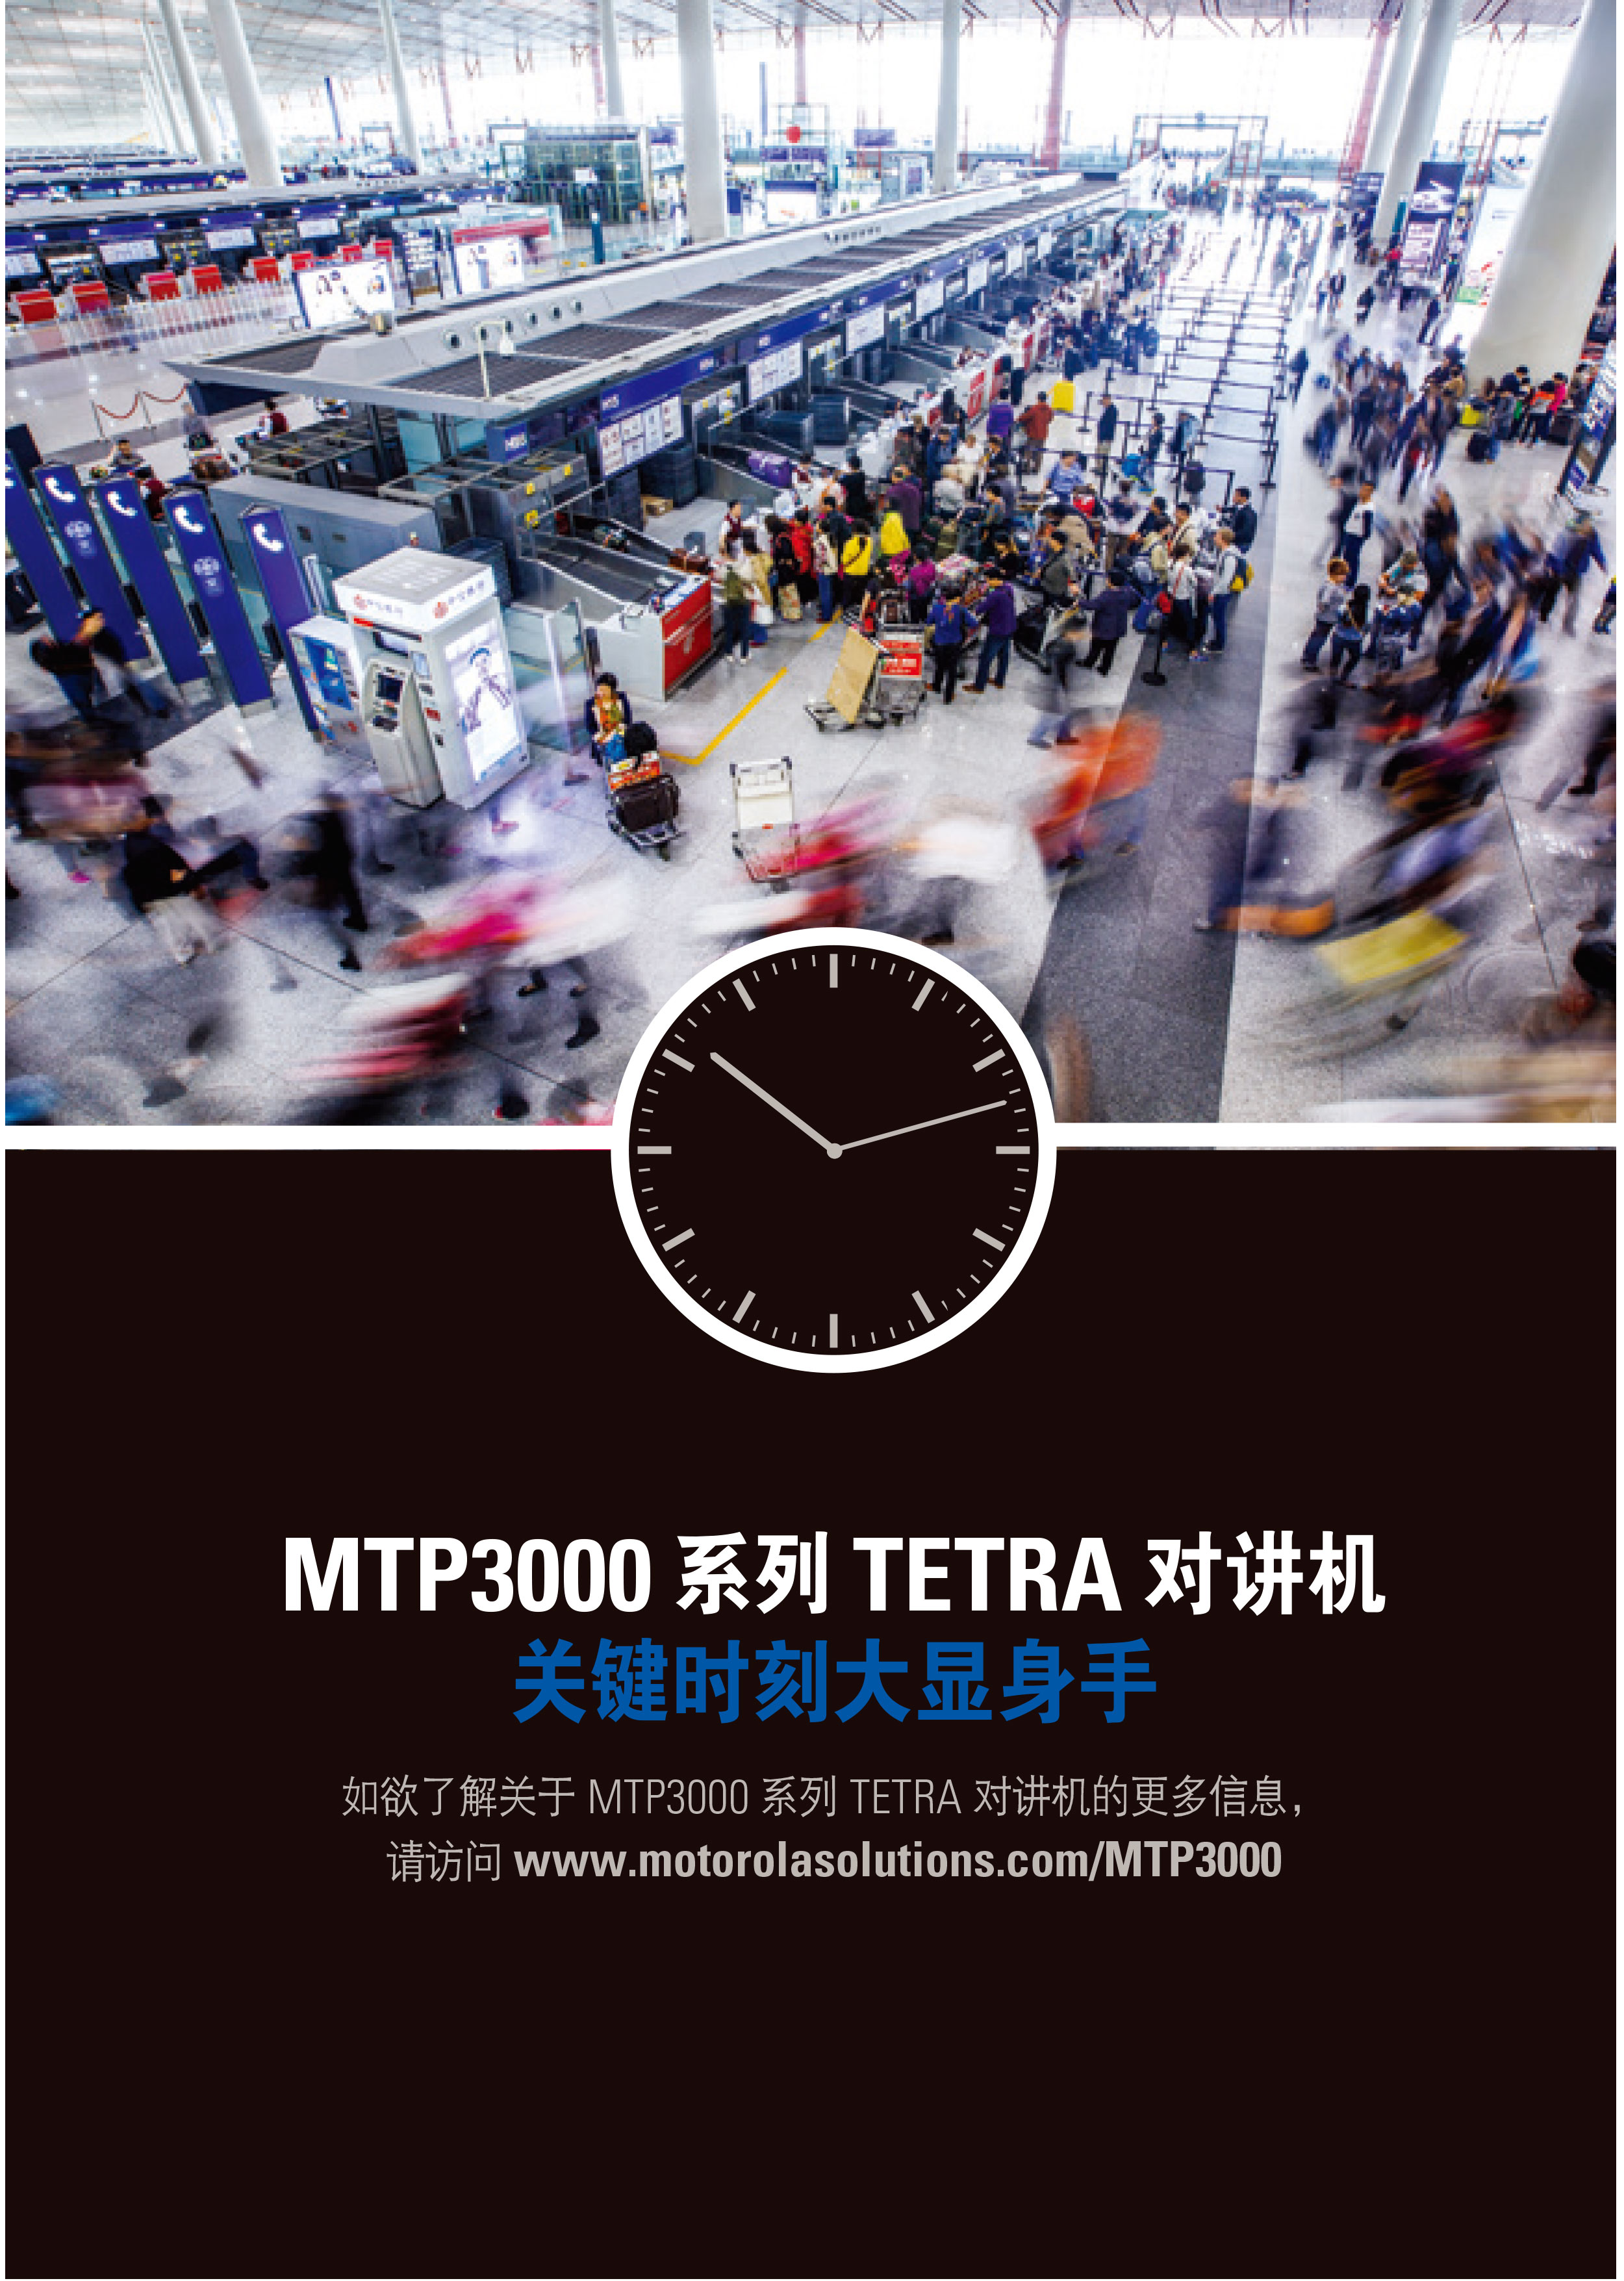 MTP3550-TETRA-对讲机彩页_07